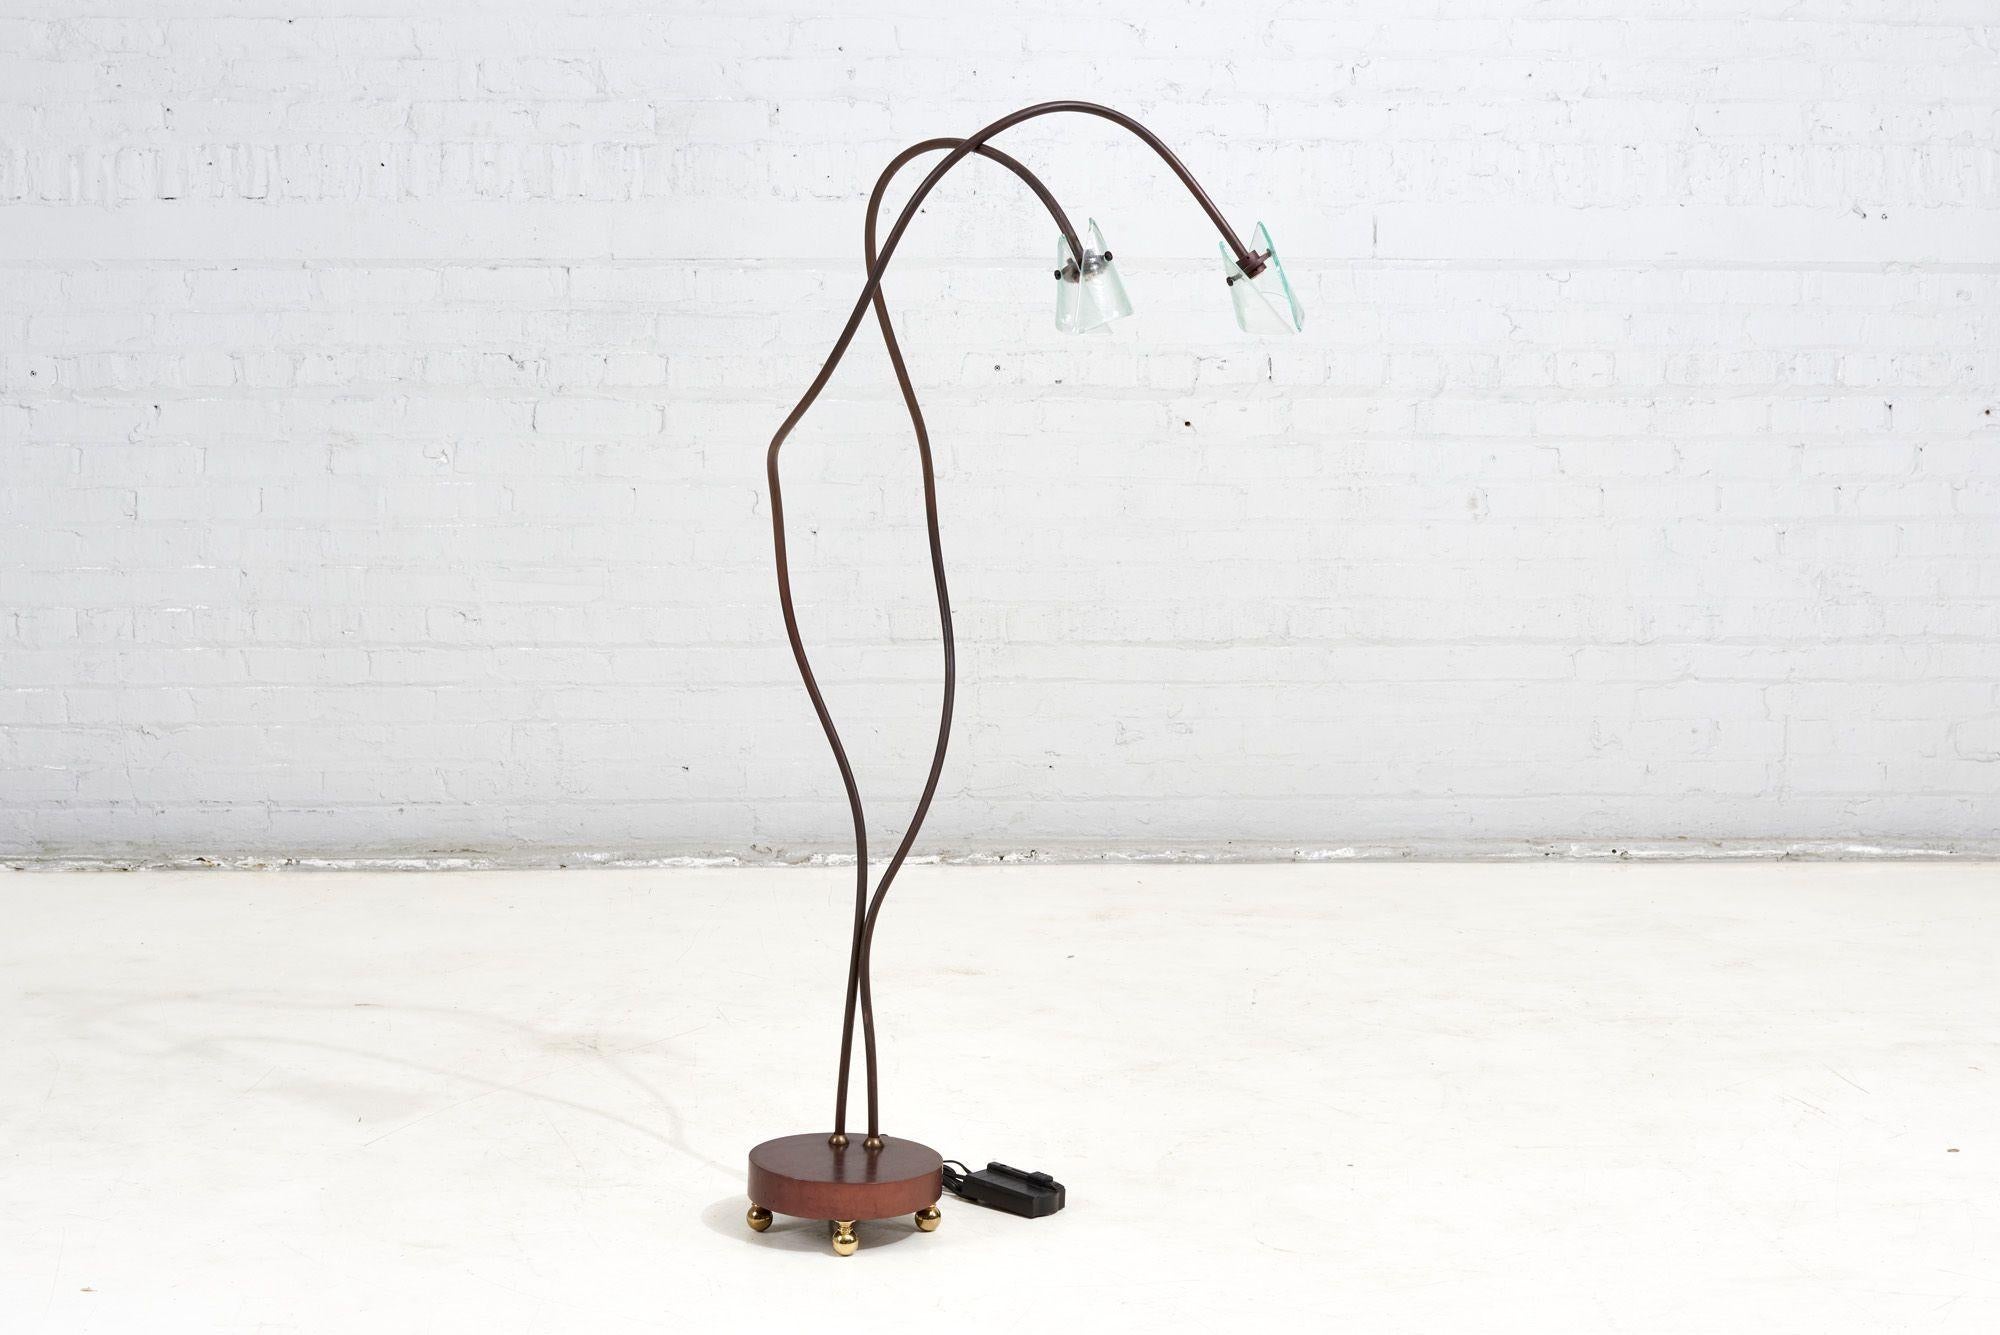 Stehleuchte Stil von Ron Arad, Italien. Die Lampe ist absolut wunderschön und steht auf einem Holzsockel mit Messingkugelfüßen.
Maße: 4' 3,5